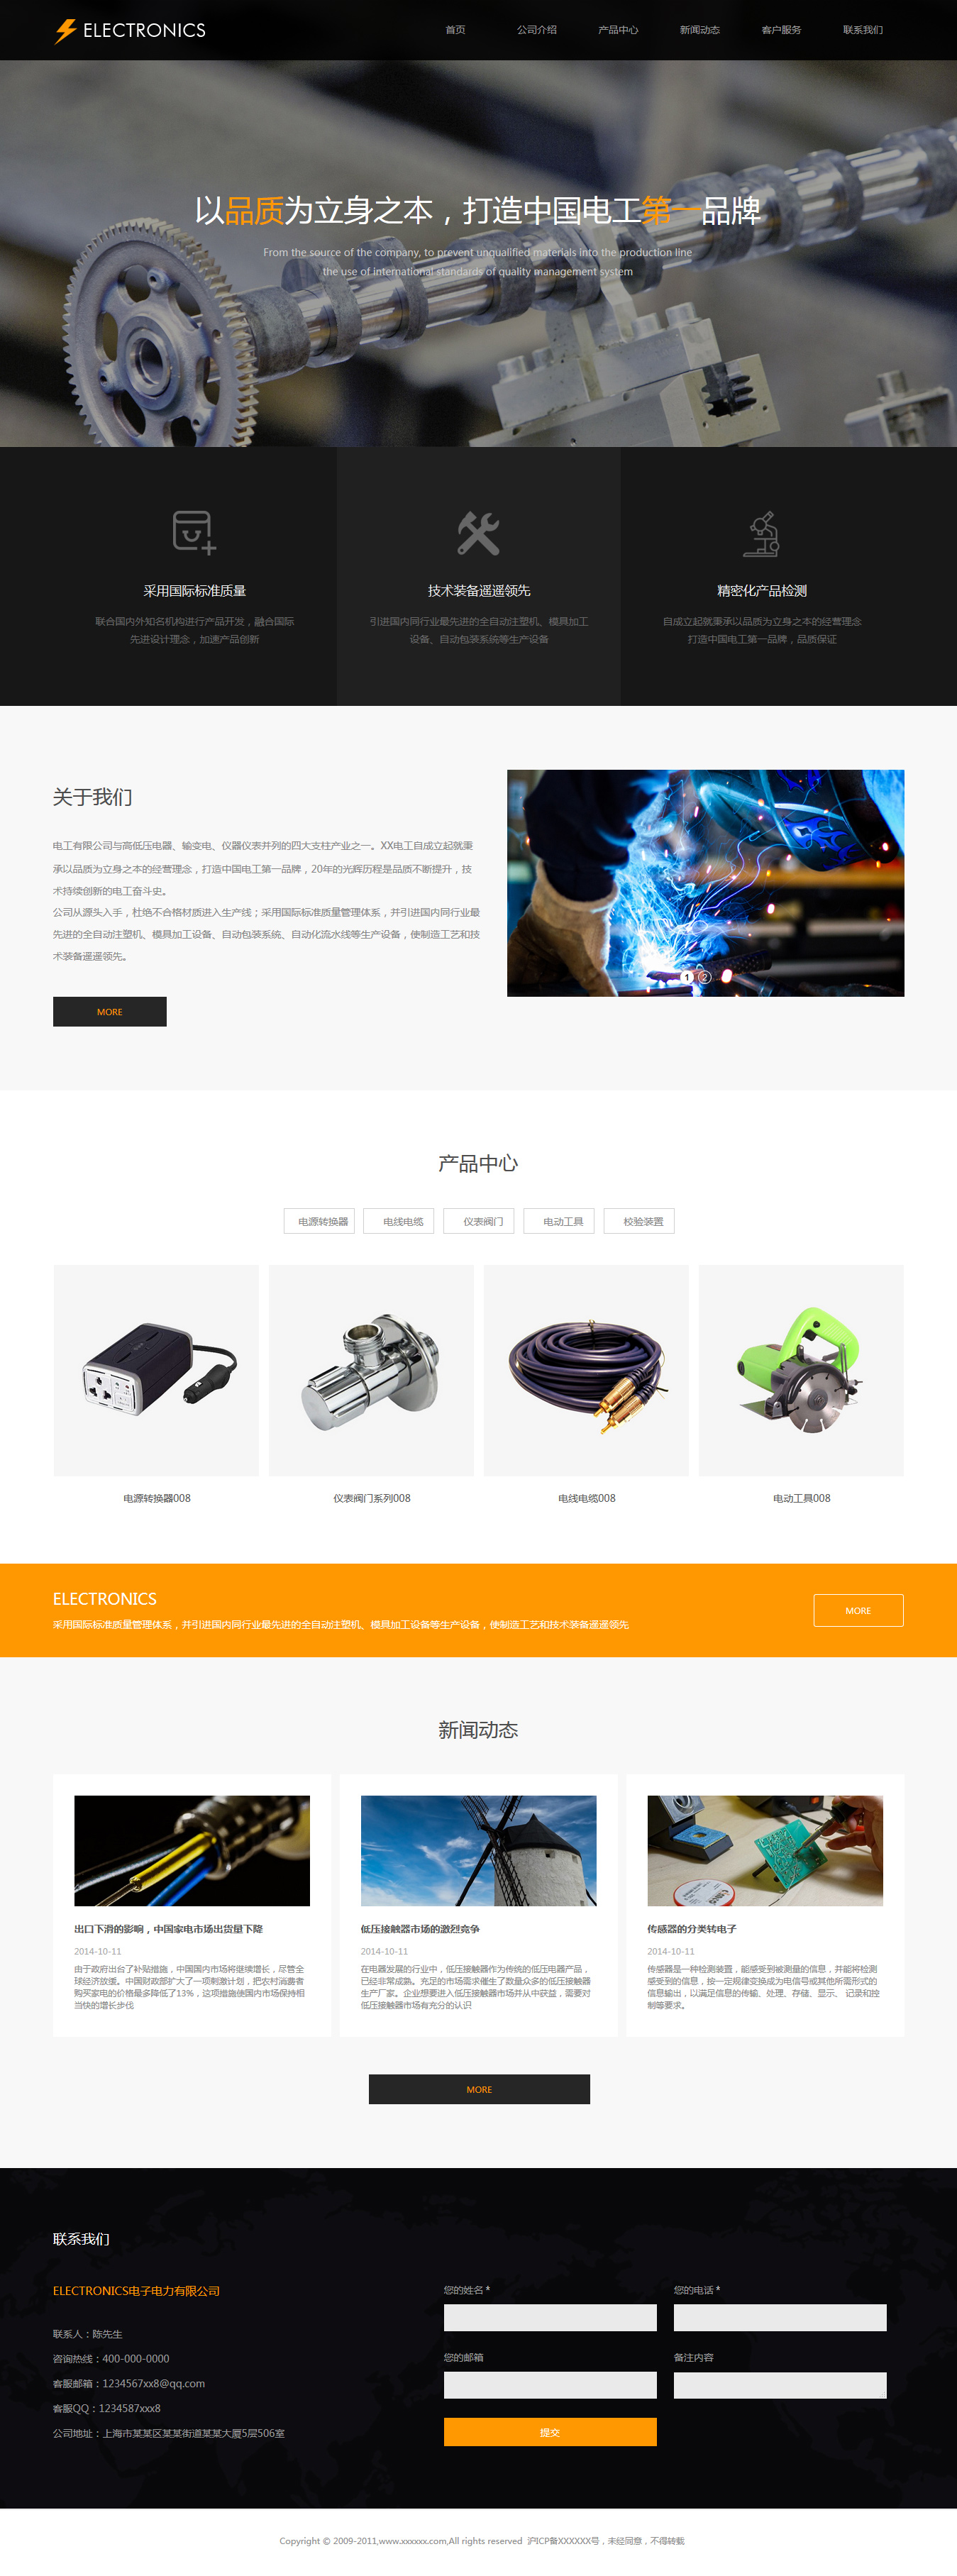 企业网站精美模板-electronics-1115392